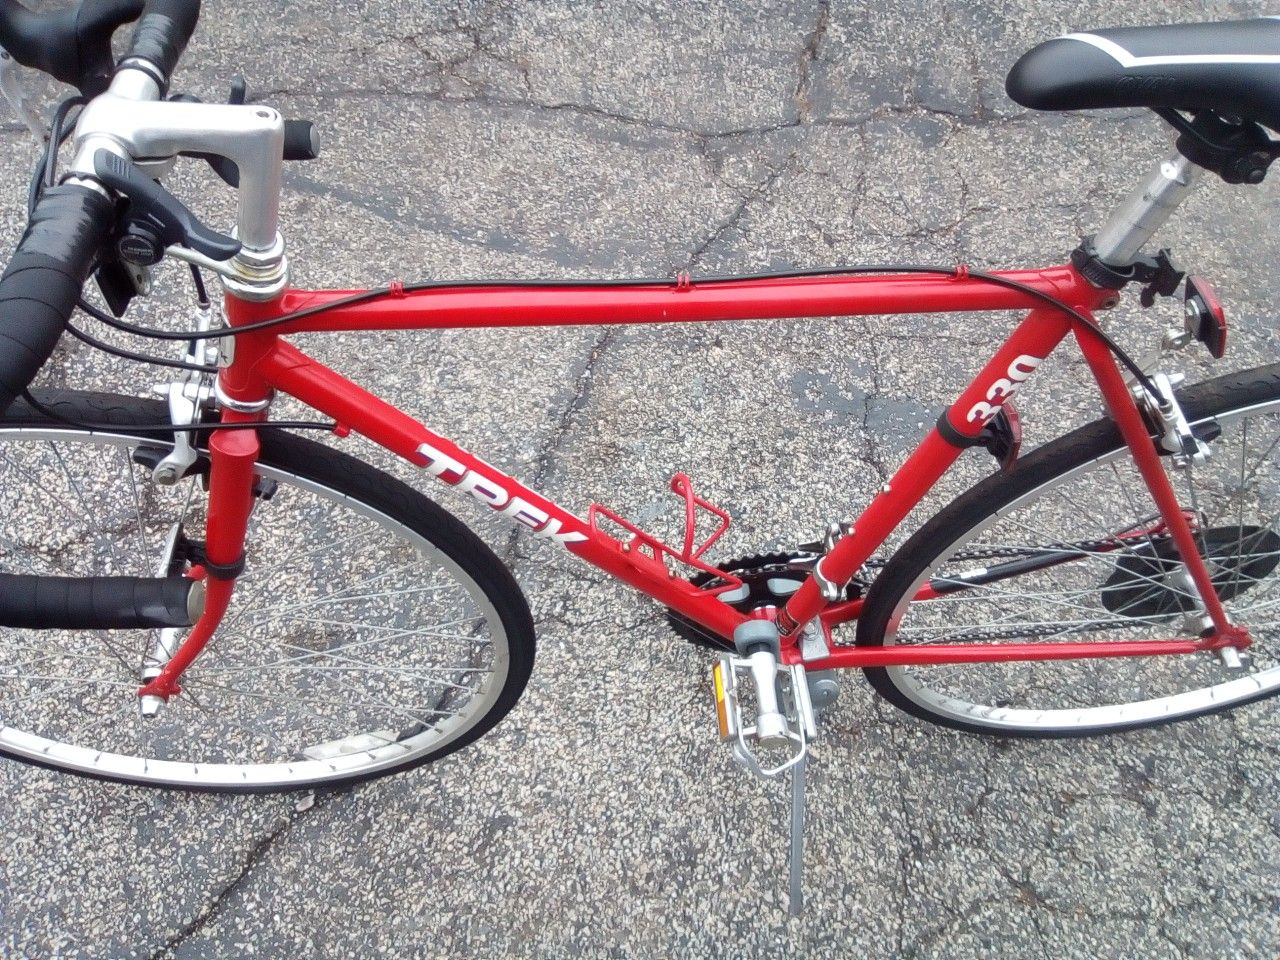 1987 -Trek 330 road bike